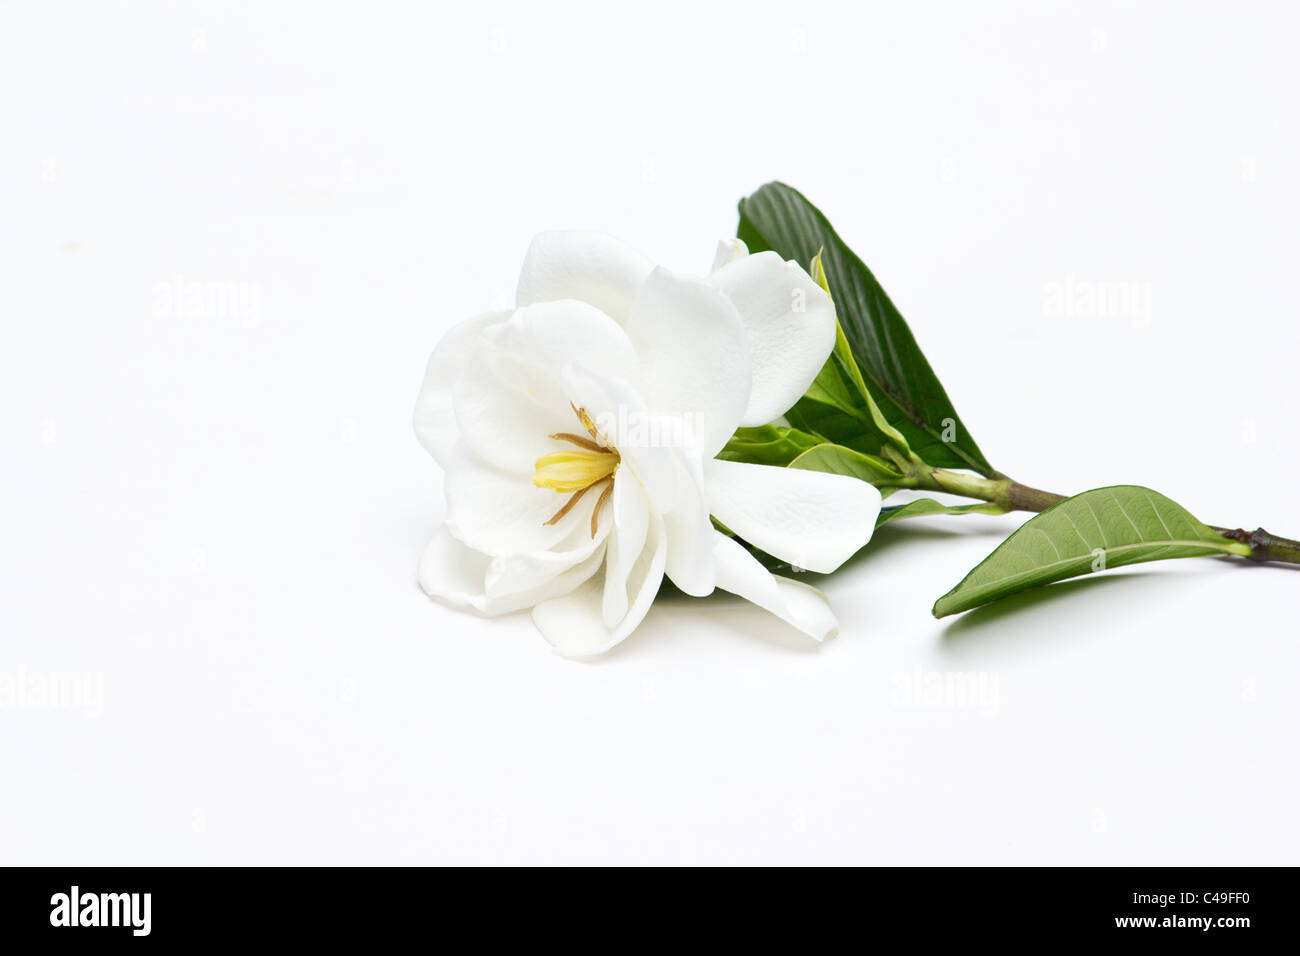 Gardenia Jasminoides on white background Stock Photo